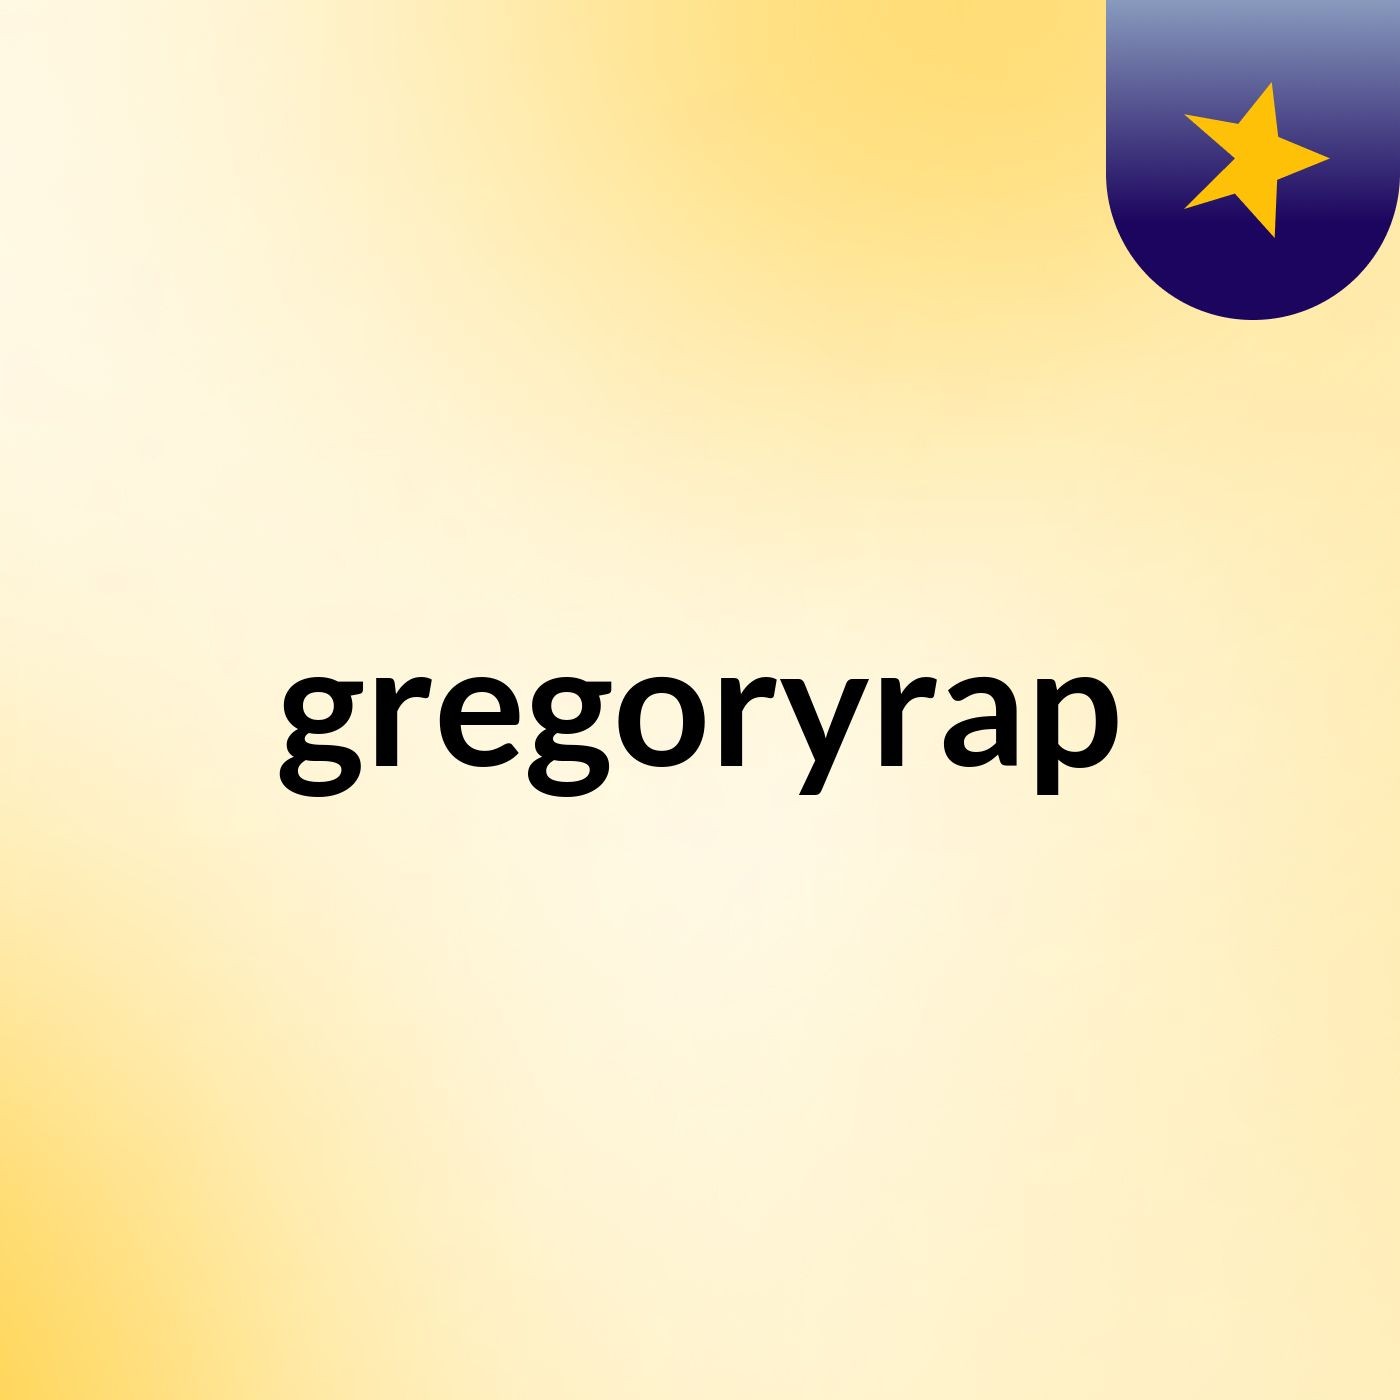 gregoryrap